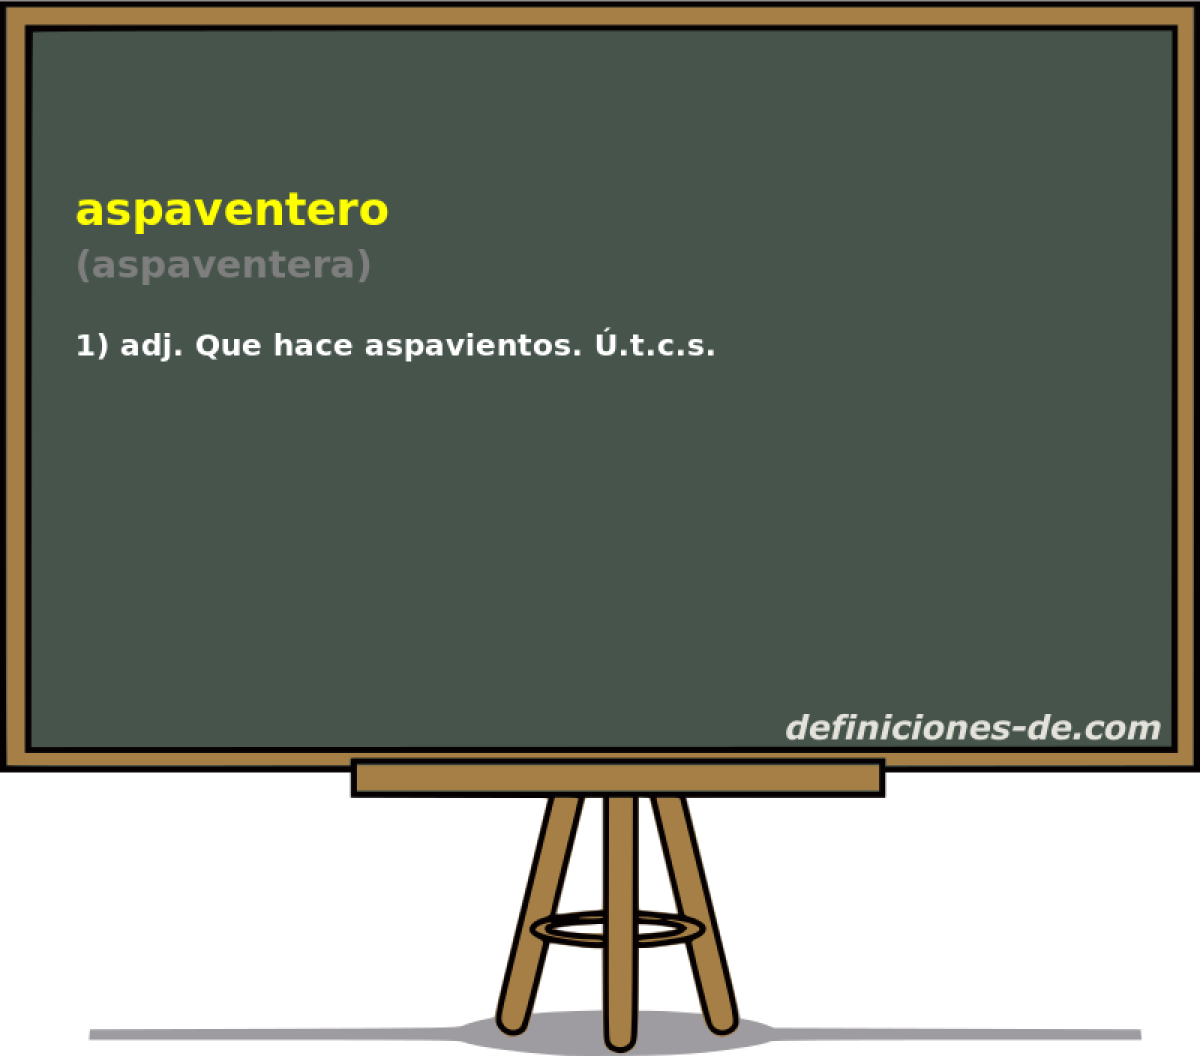 aspaventero (aspaventera)